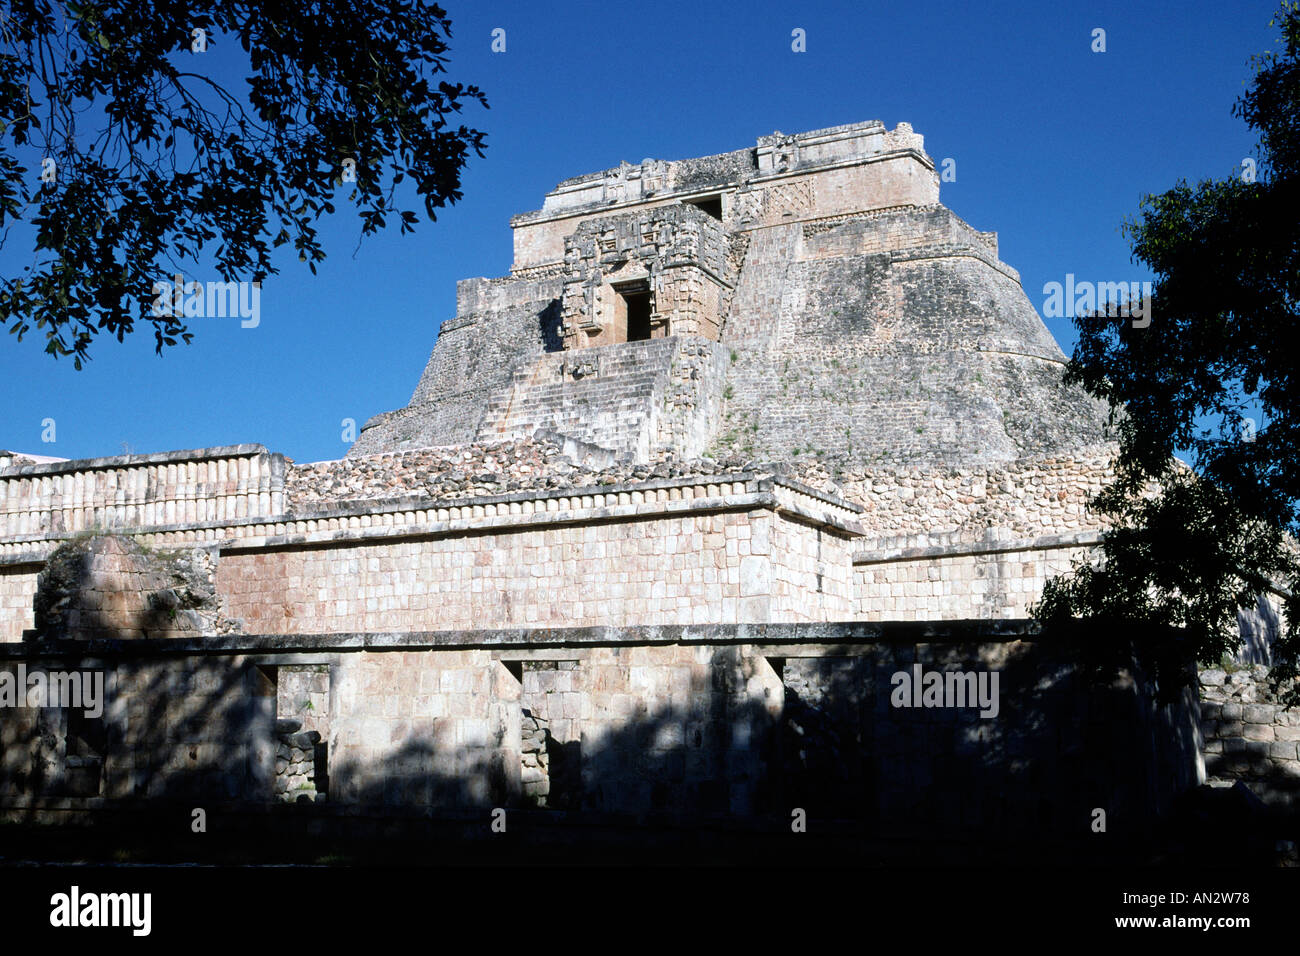 La pyramide du magicien, une partie de l'Uxmal ruines mayas dans l'état du Yucatan au Mexique. Banque D'Images